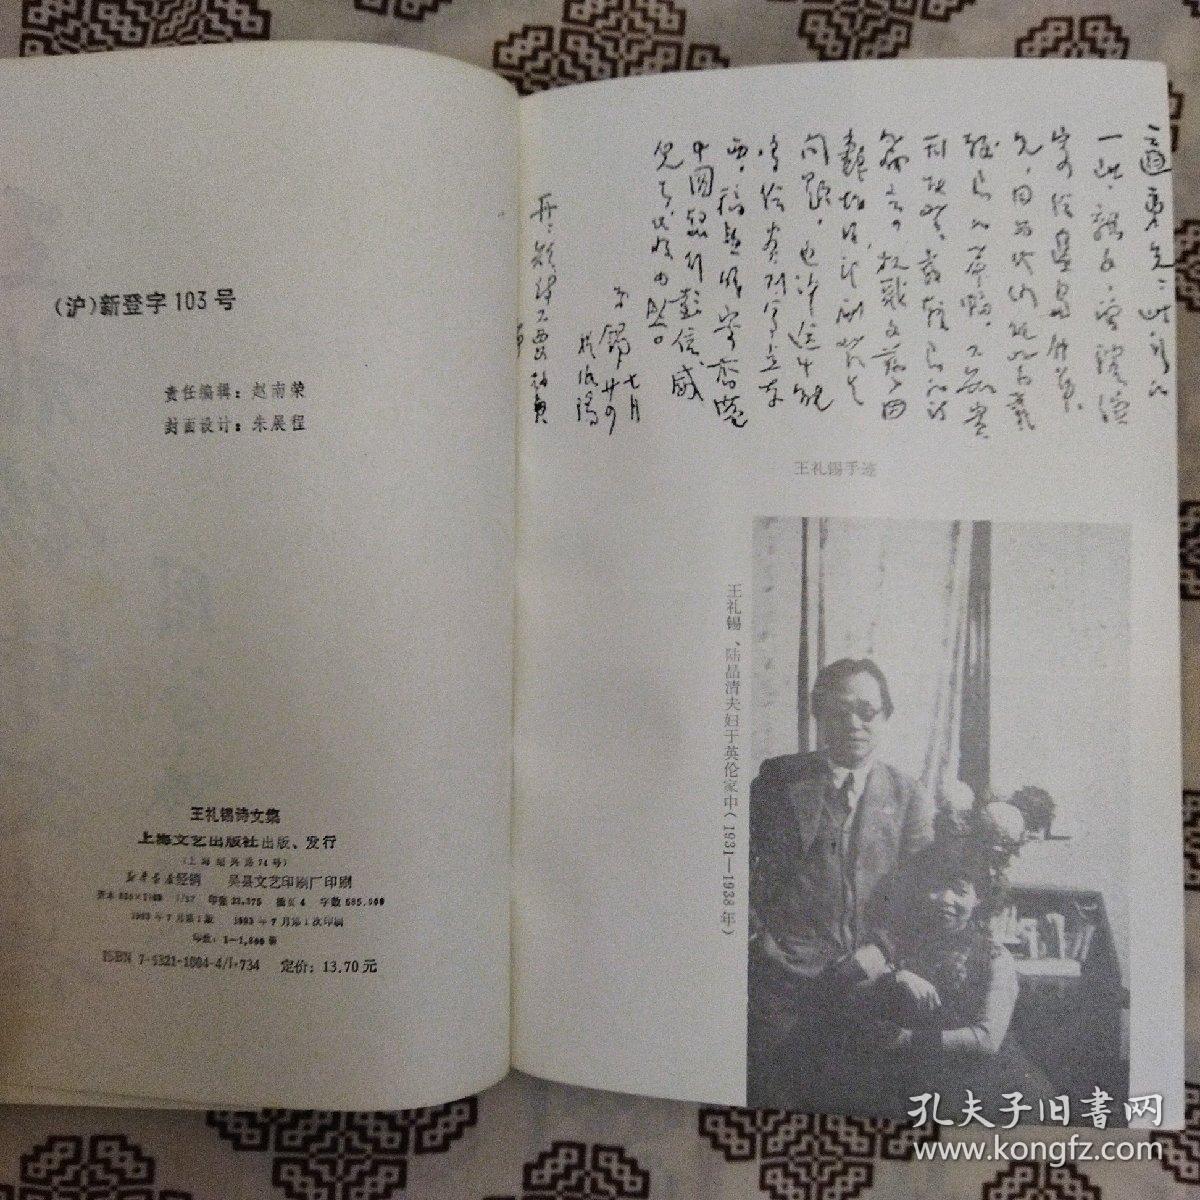 《王礼锡诗文集》作者为民国著名爱国诗人、学者和社会活动家。上海文艺出版社1993年7月1版1印，印数1800册，书前有照片9帧，大32开742页58.5万字。